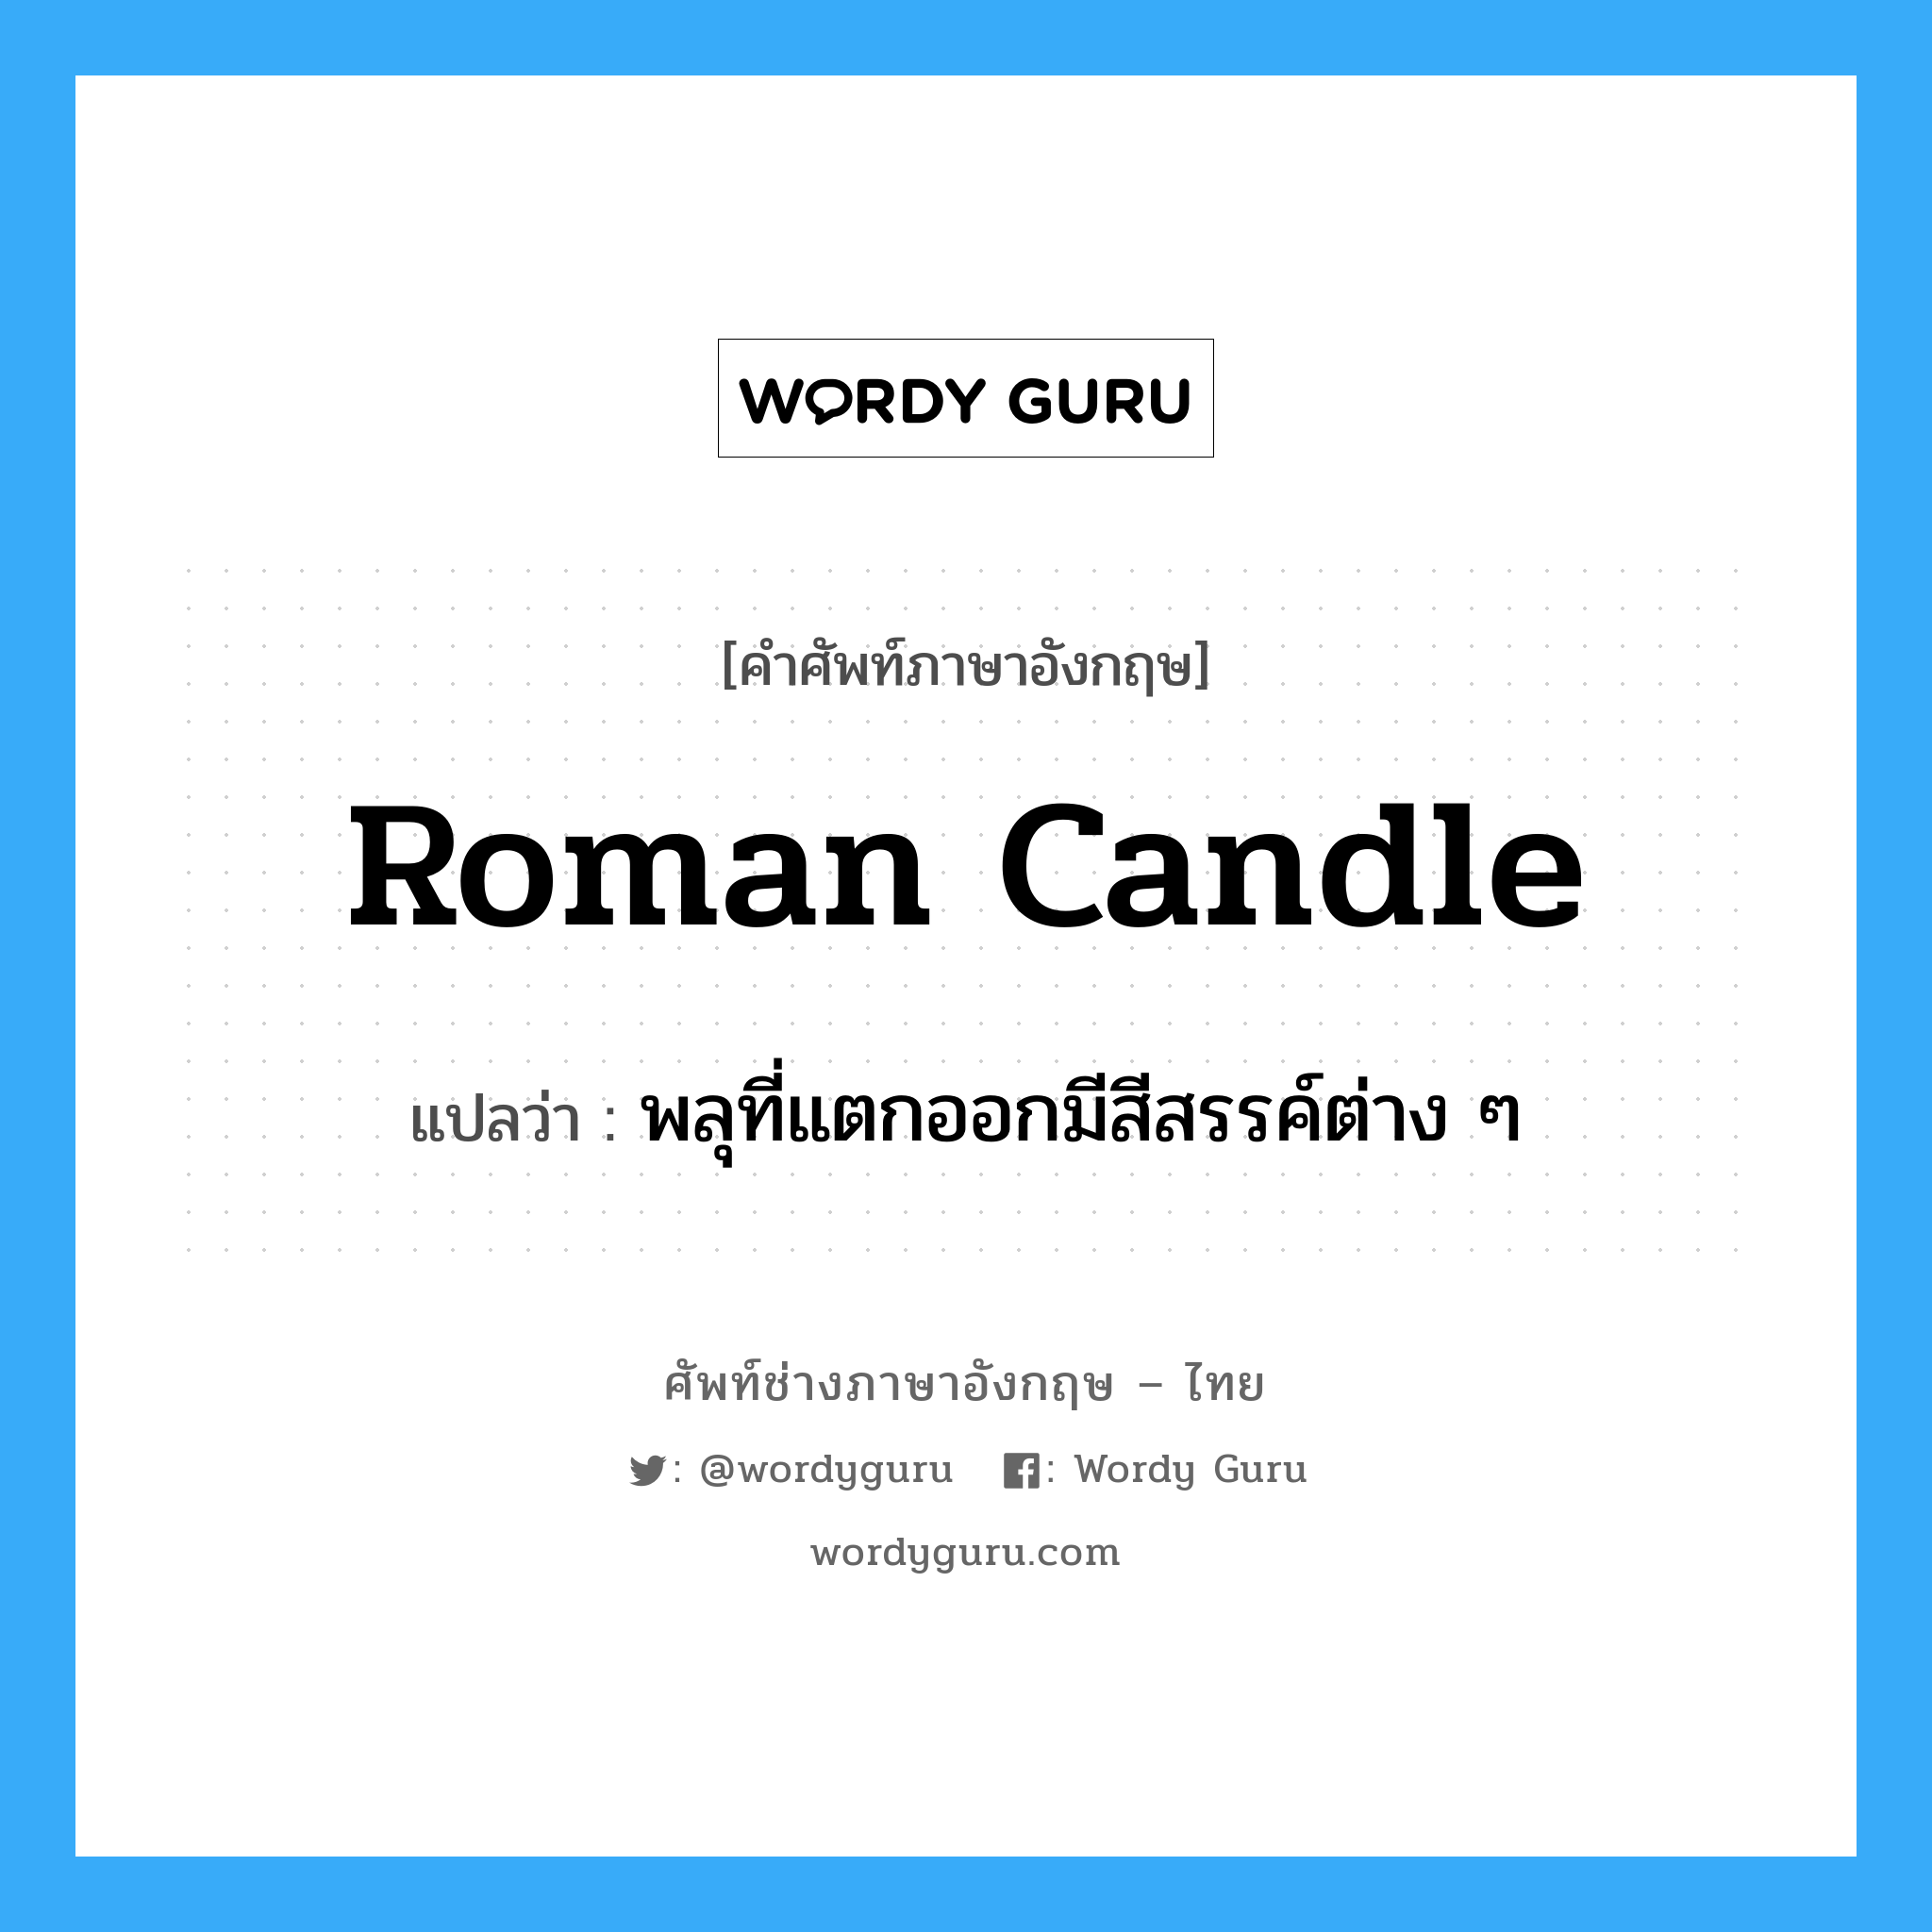 Roman candle แปลว่า?, คำศัพท์ช่างภาษาอังกฤษ - ไทย Roman candle คำศัพท์ภาษาอังกฤษ Roman candle แปลว่า พลุที่แตกออกมีสีสรรค์ต่าง ๆ